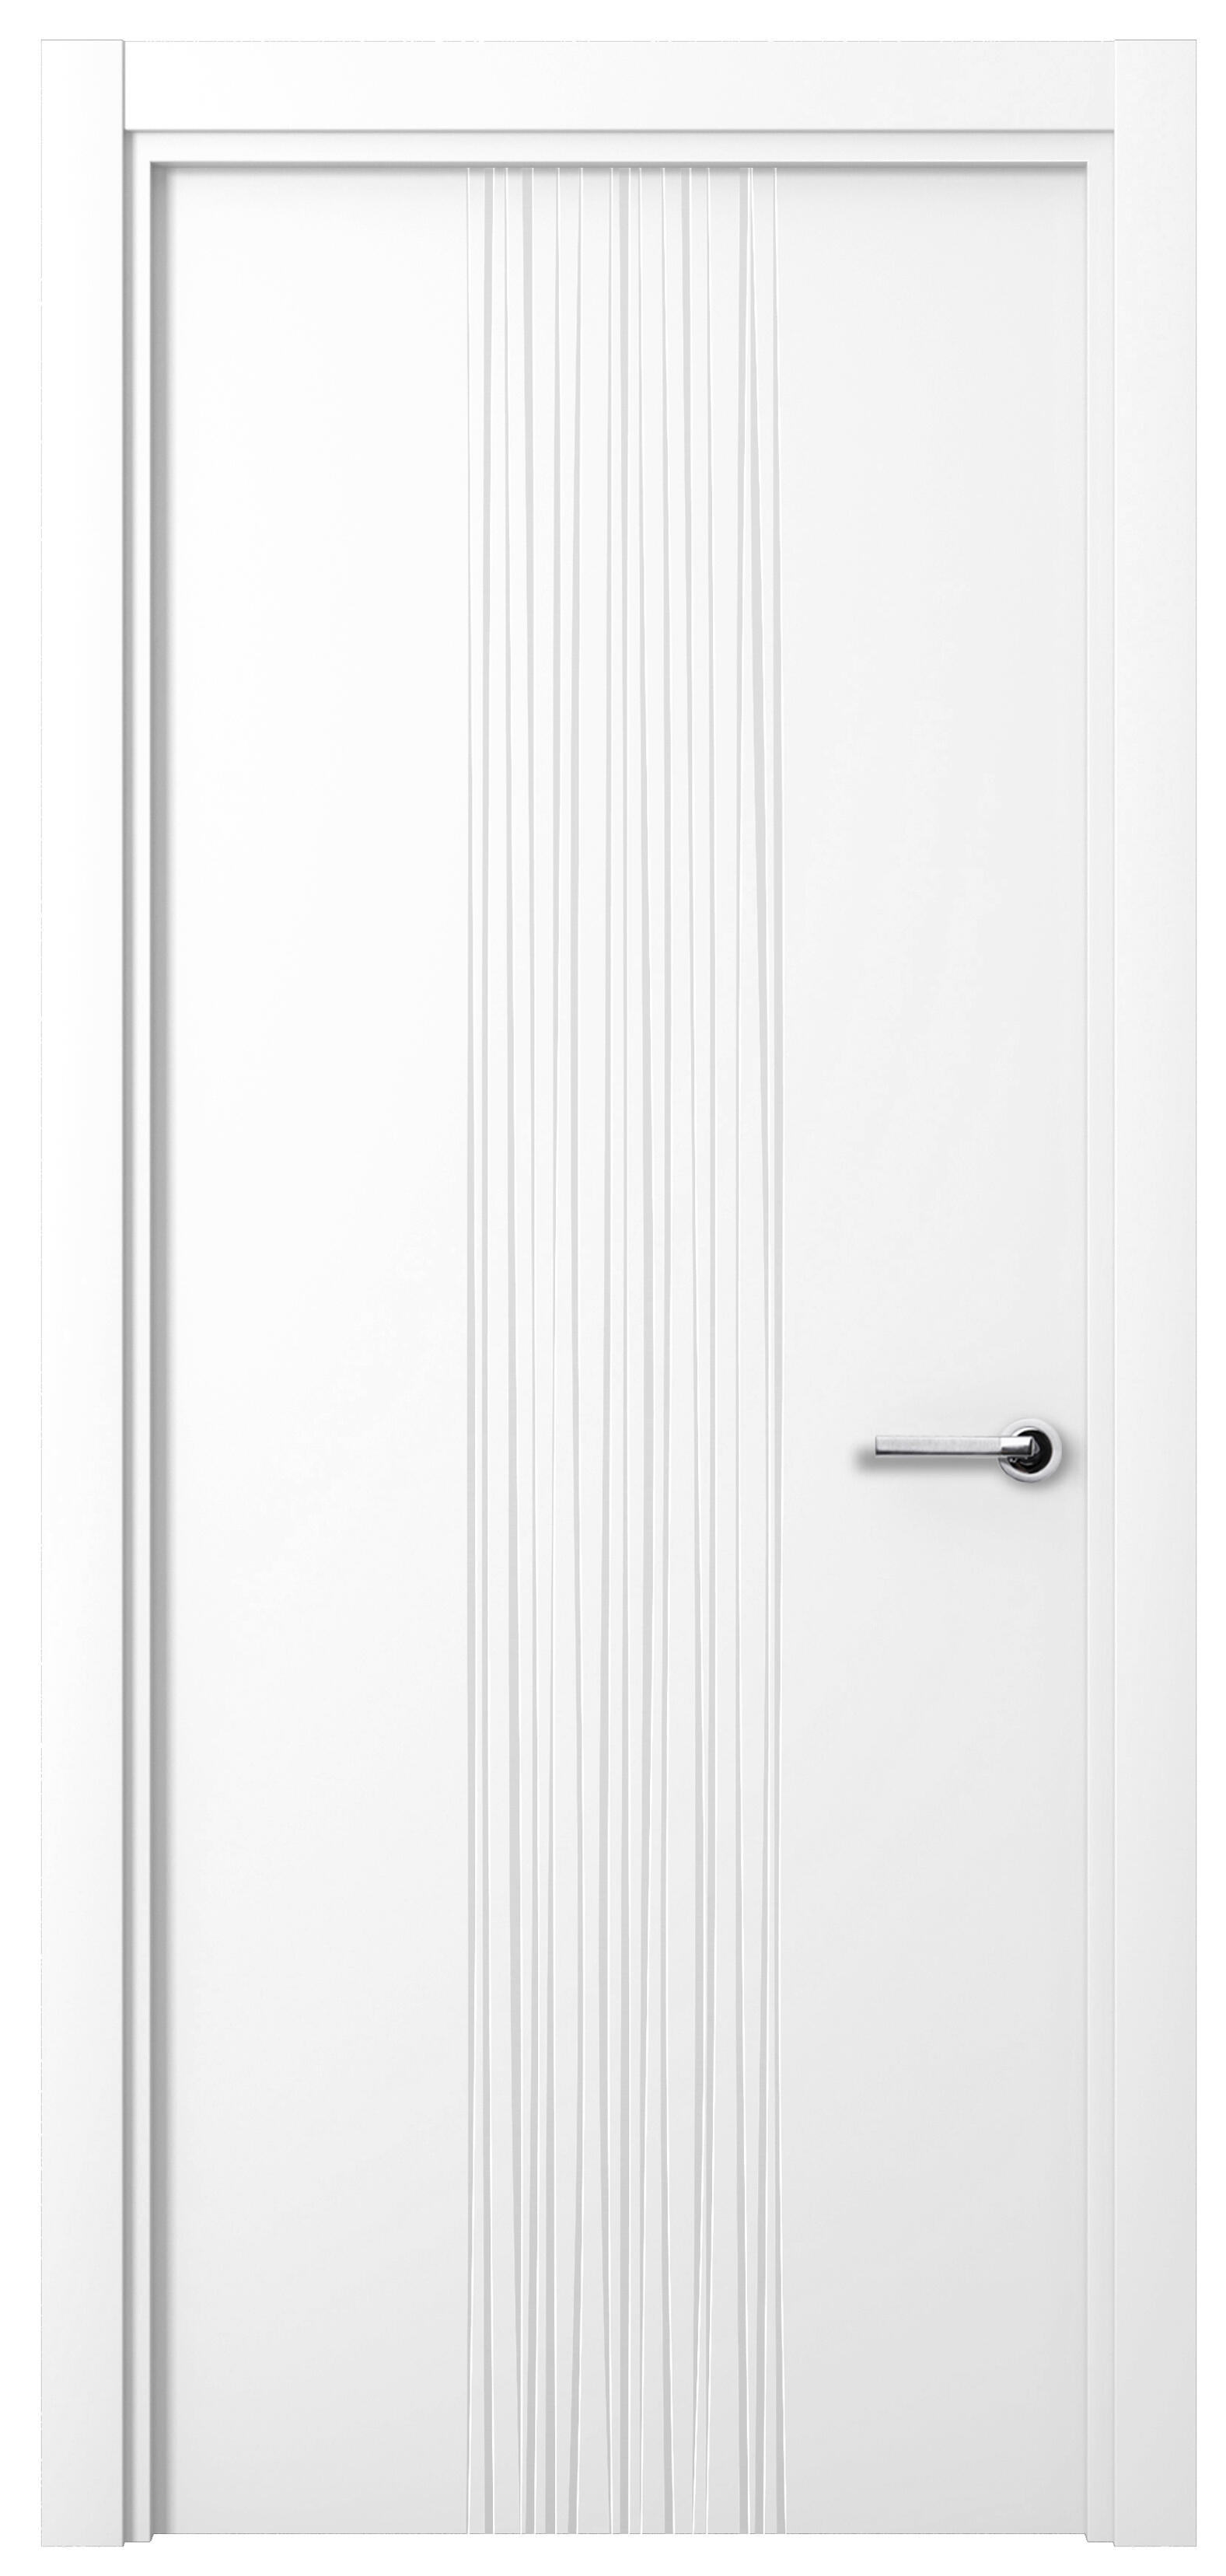 Puerta quevedo premium blanco apertura izquierda 9x62.5cm